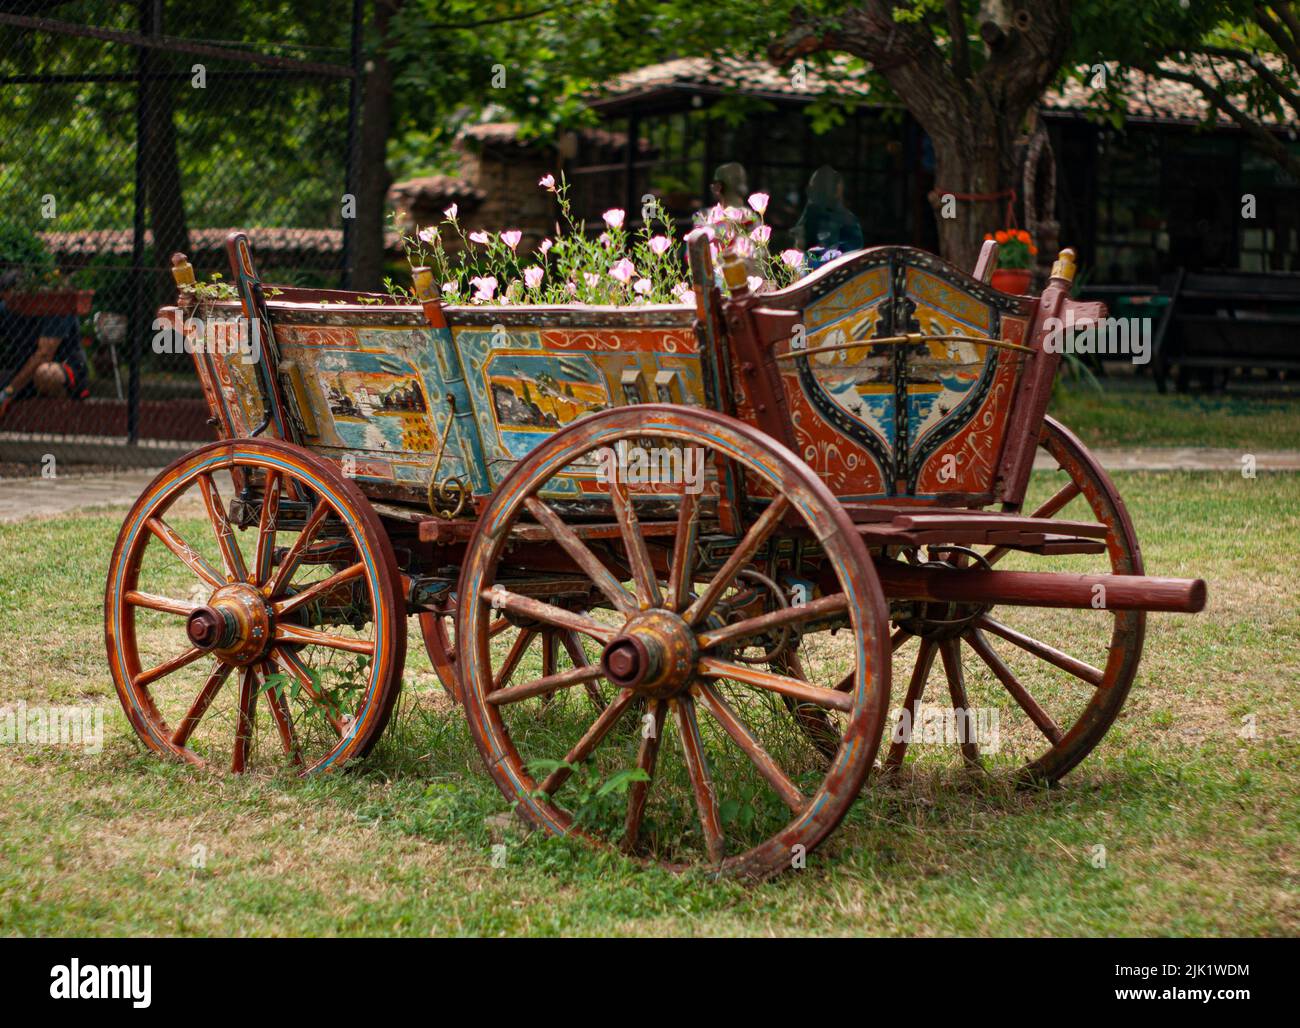 Un vecchio carro o carro in legno in Bulgaria è dipinto con scene e simboli della campagna. I fiori stanno crescendo all'interno del carrello. Foto Stock